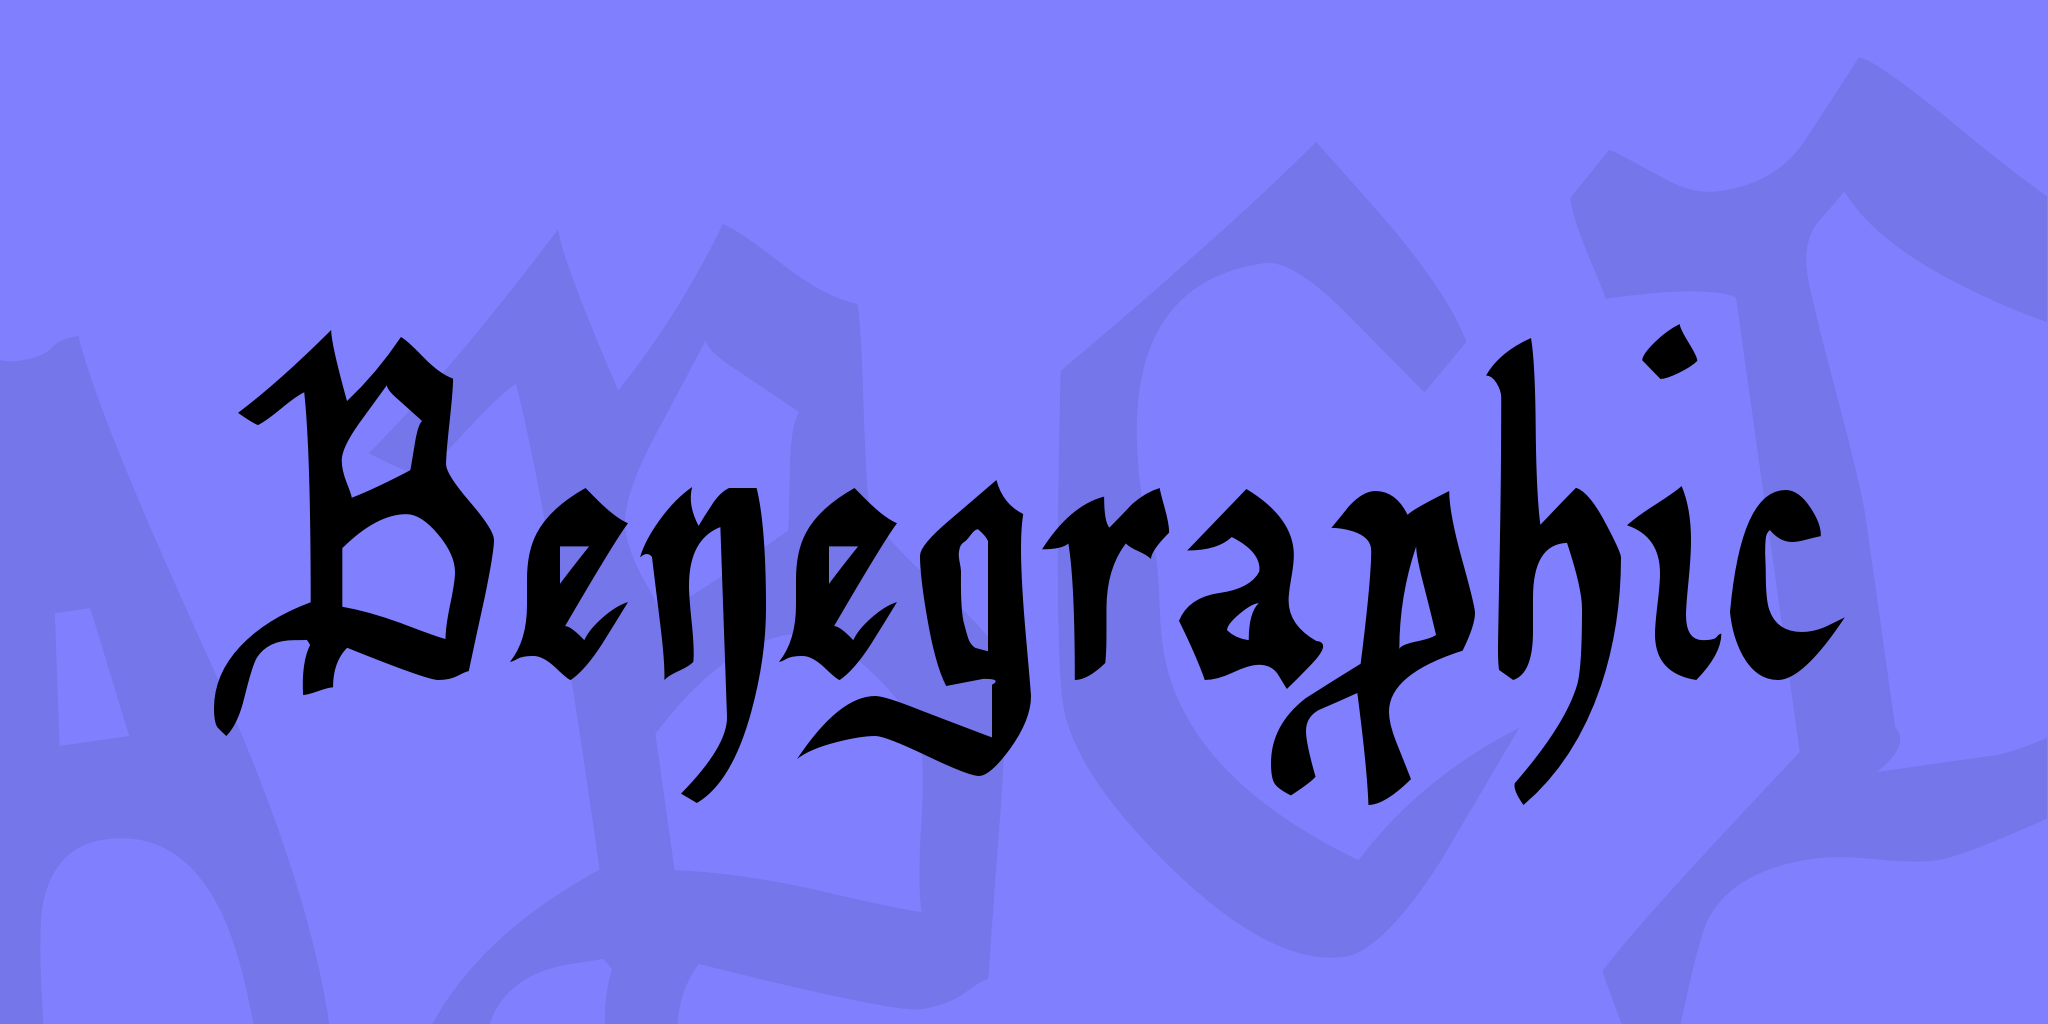 Benegraphic